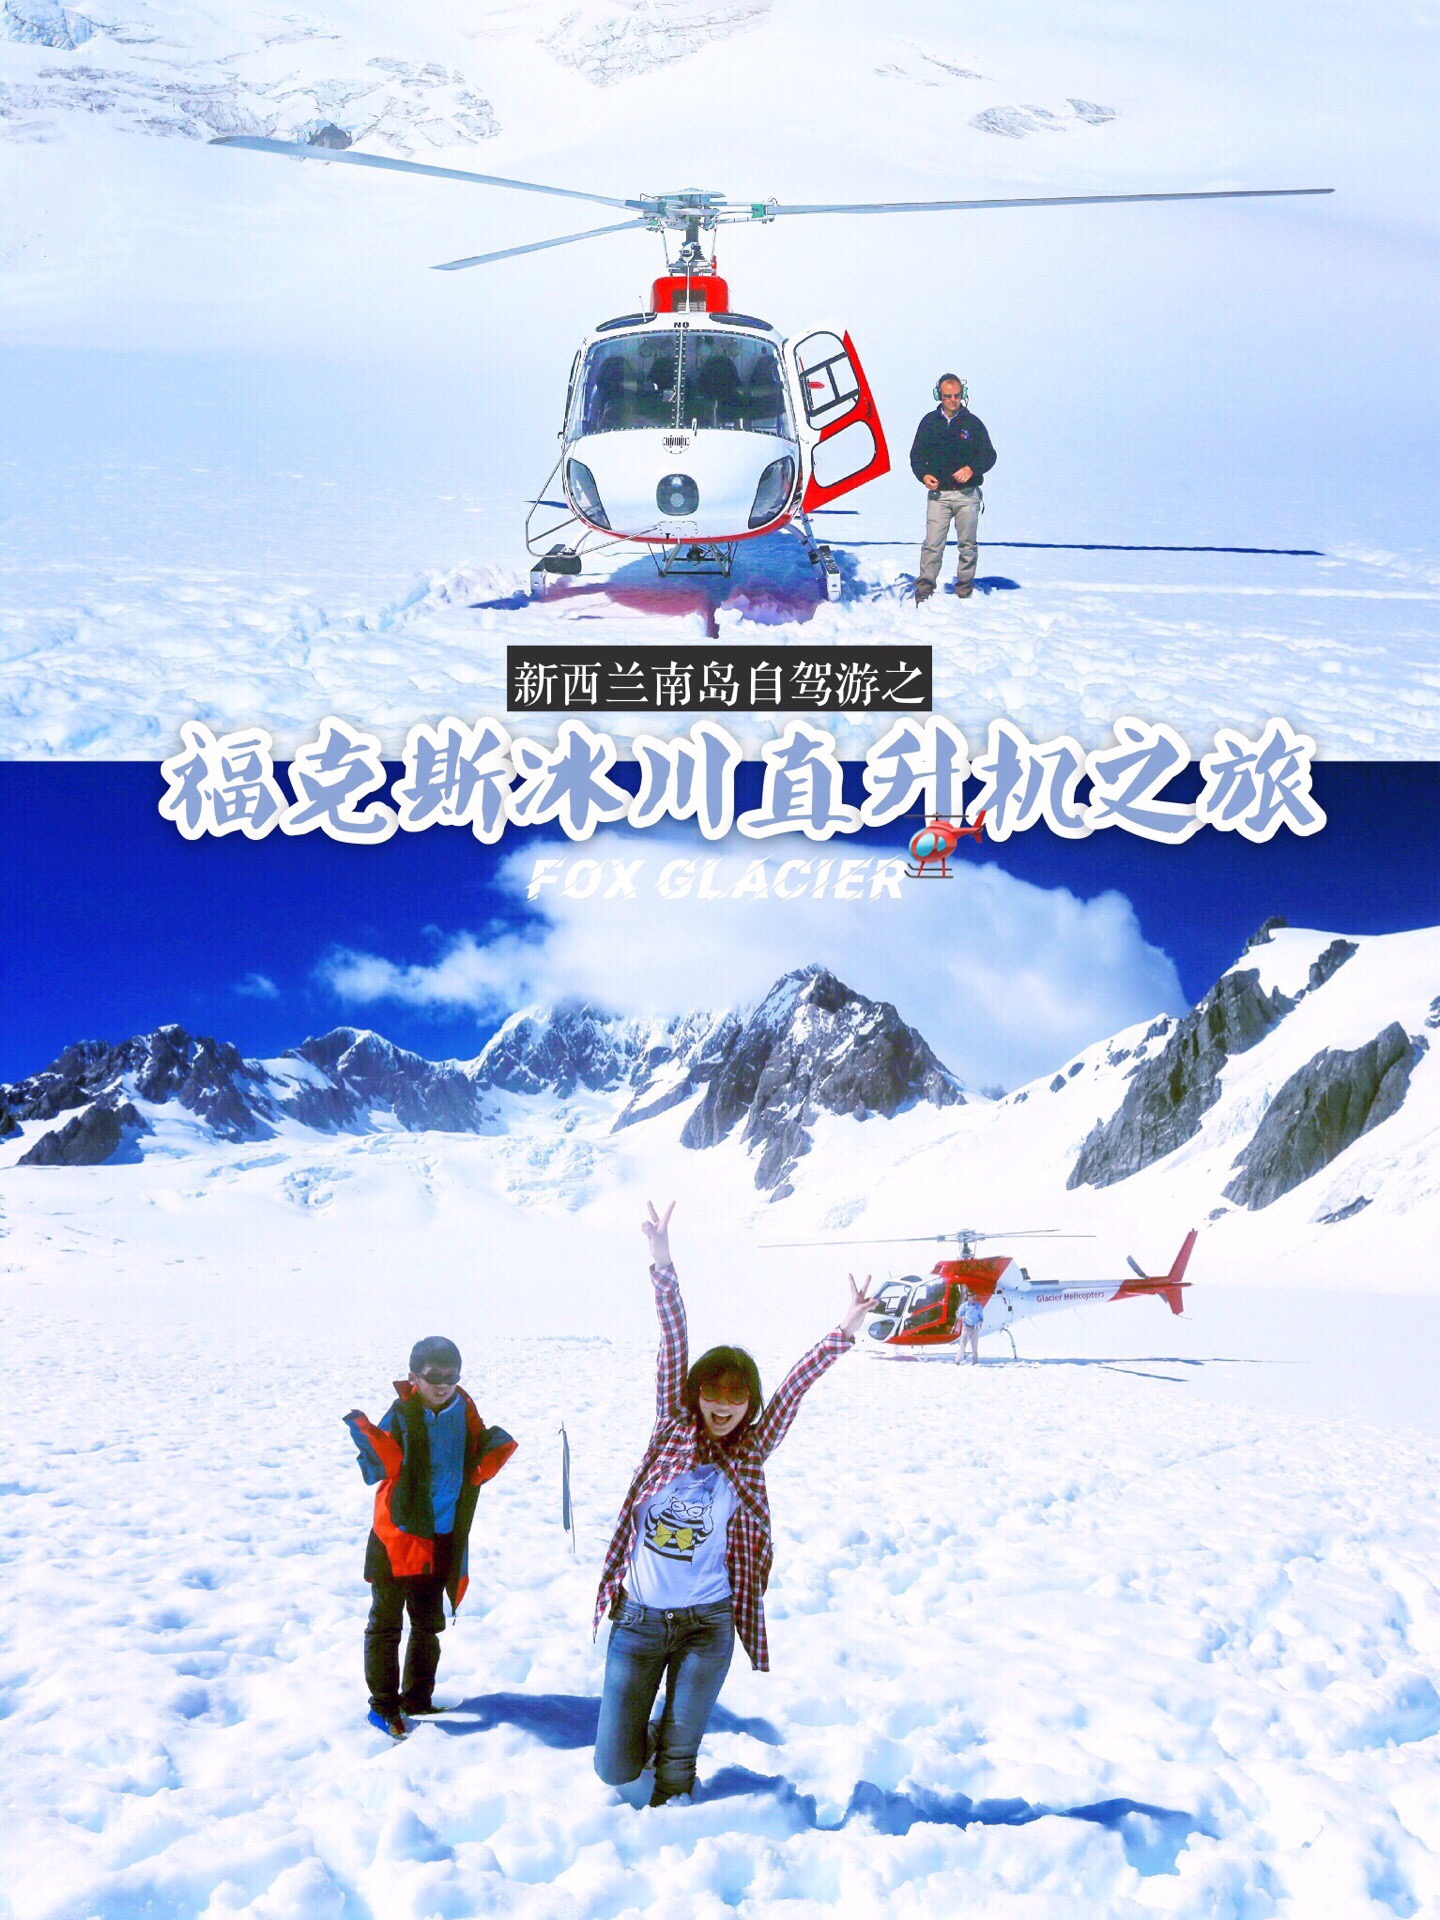 【福克斯冰川直升机🚁之旅】 福克斯冰川是新西兰著名的两大冰川之一，它位于新西兰南岛的西海岸，也是新西